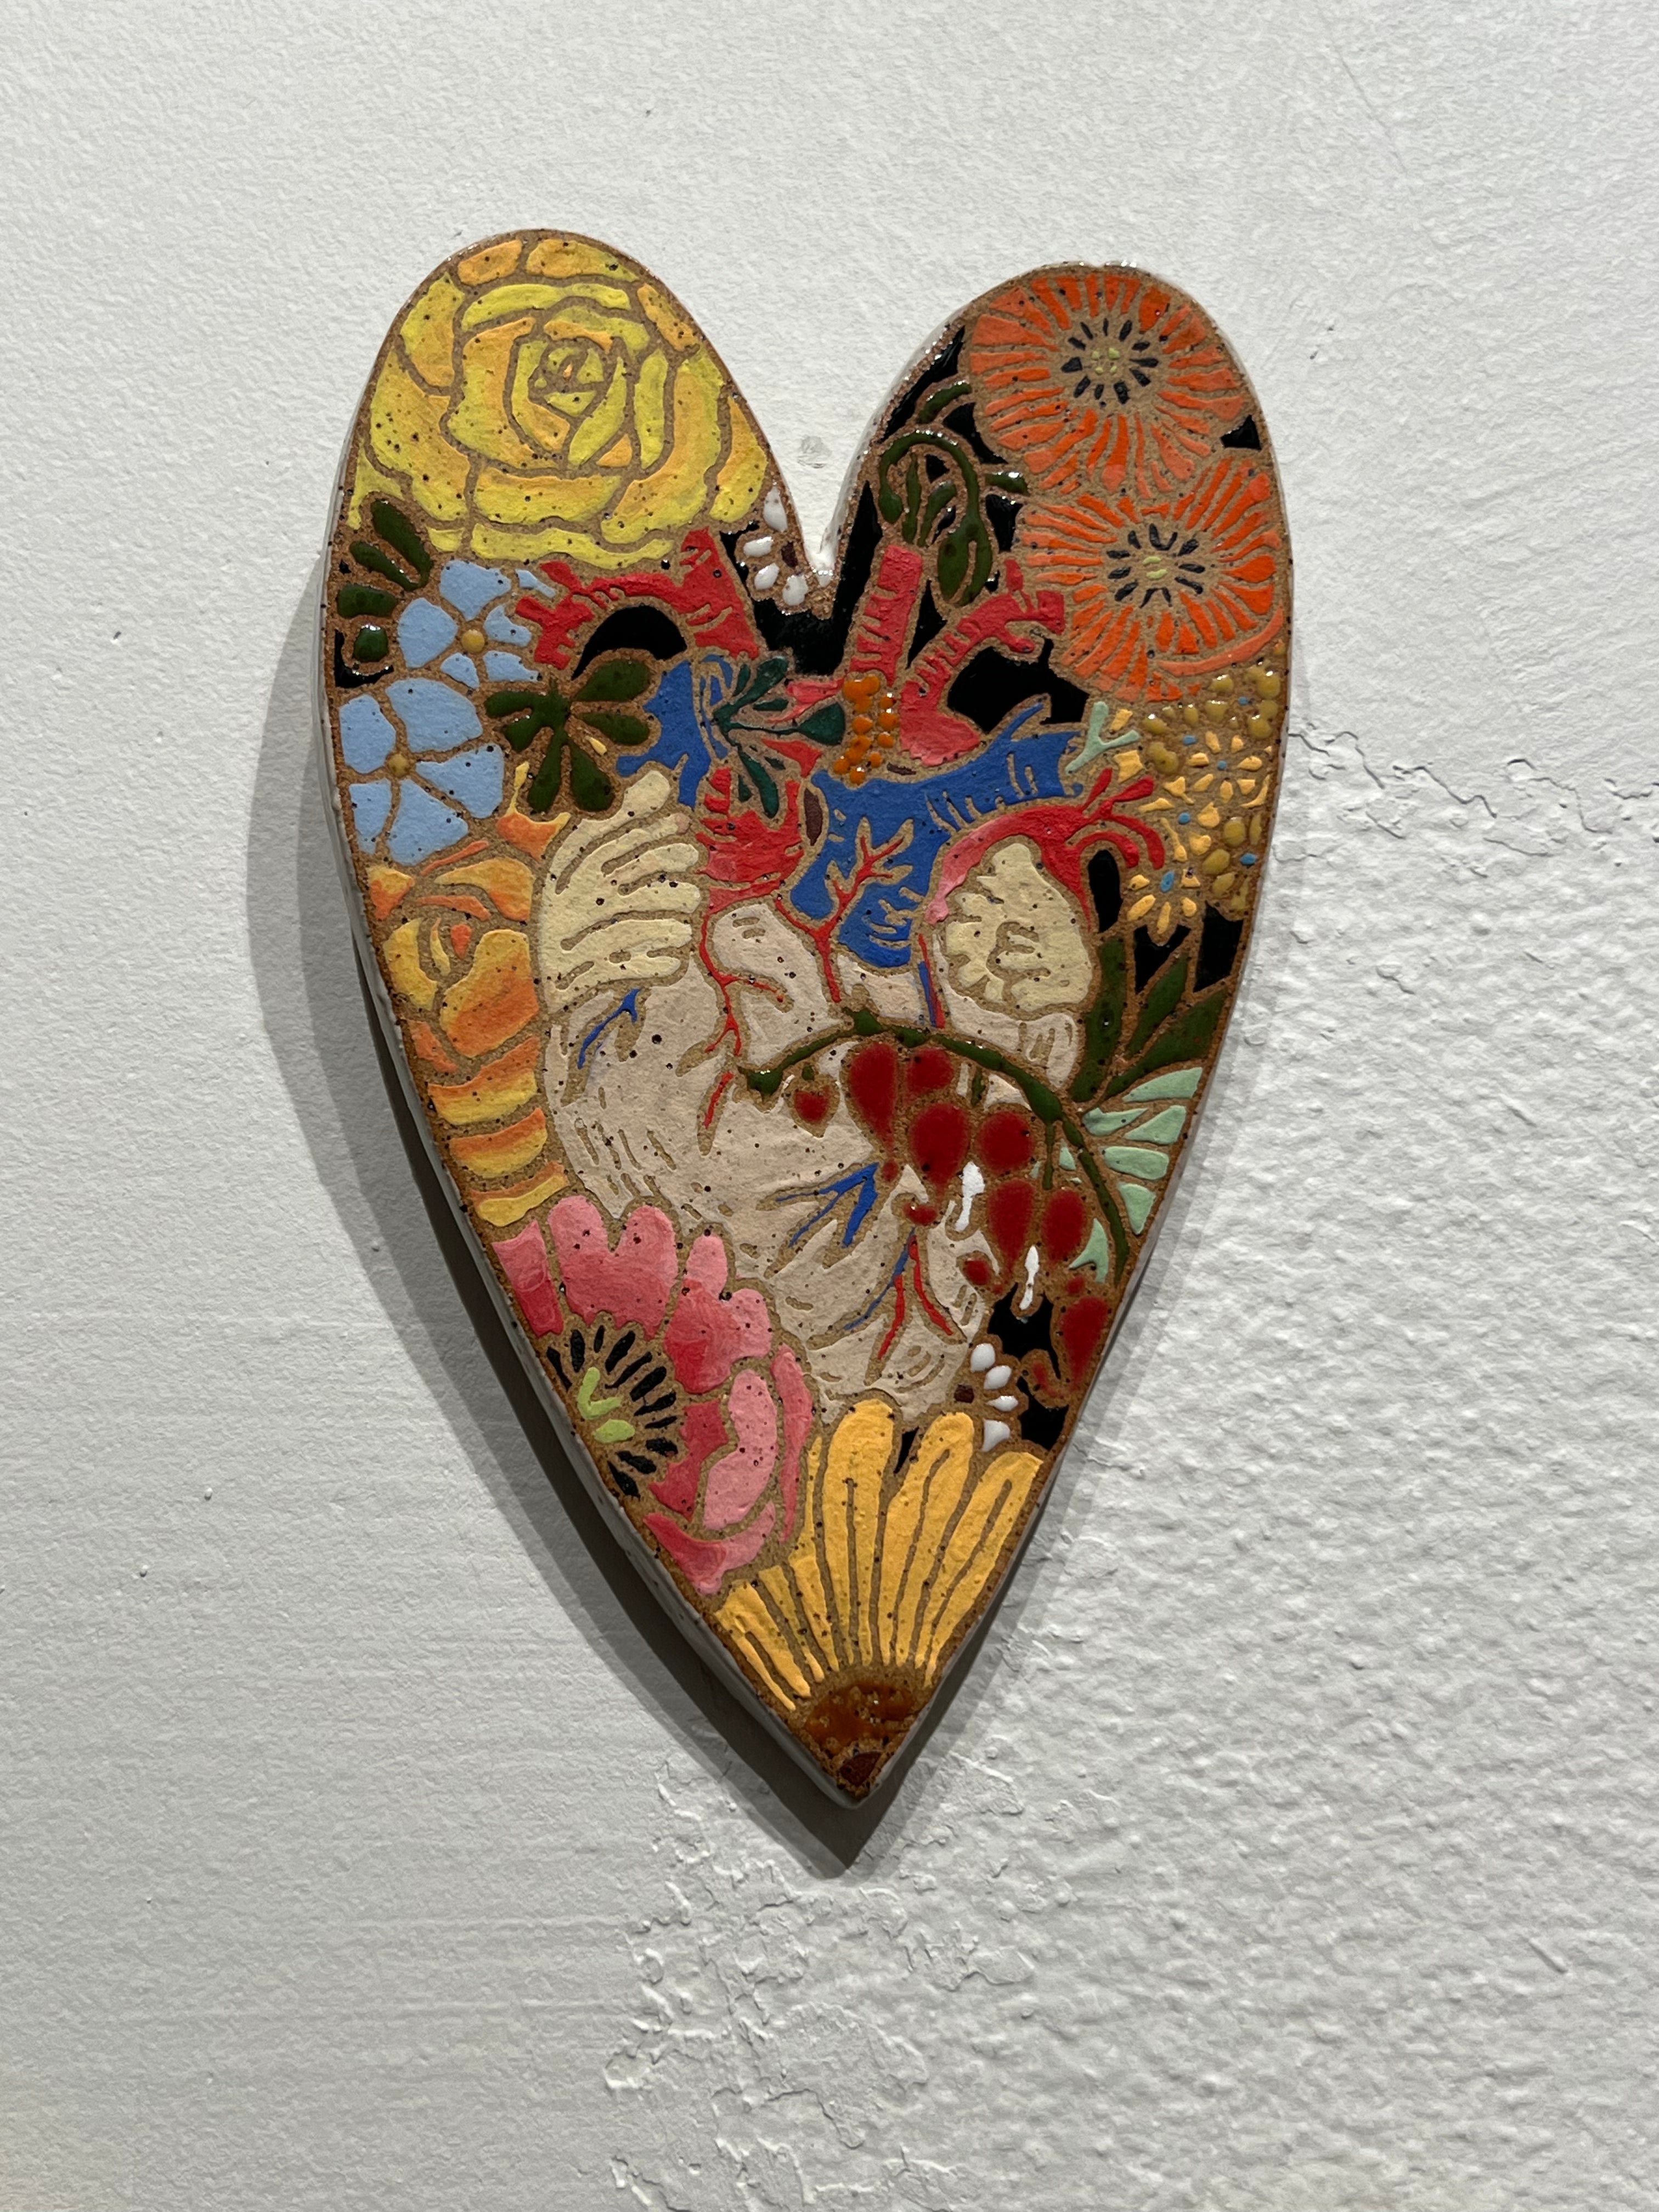 $175 Ceramic Hearts by Sadie Joy Muhlestein